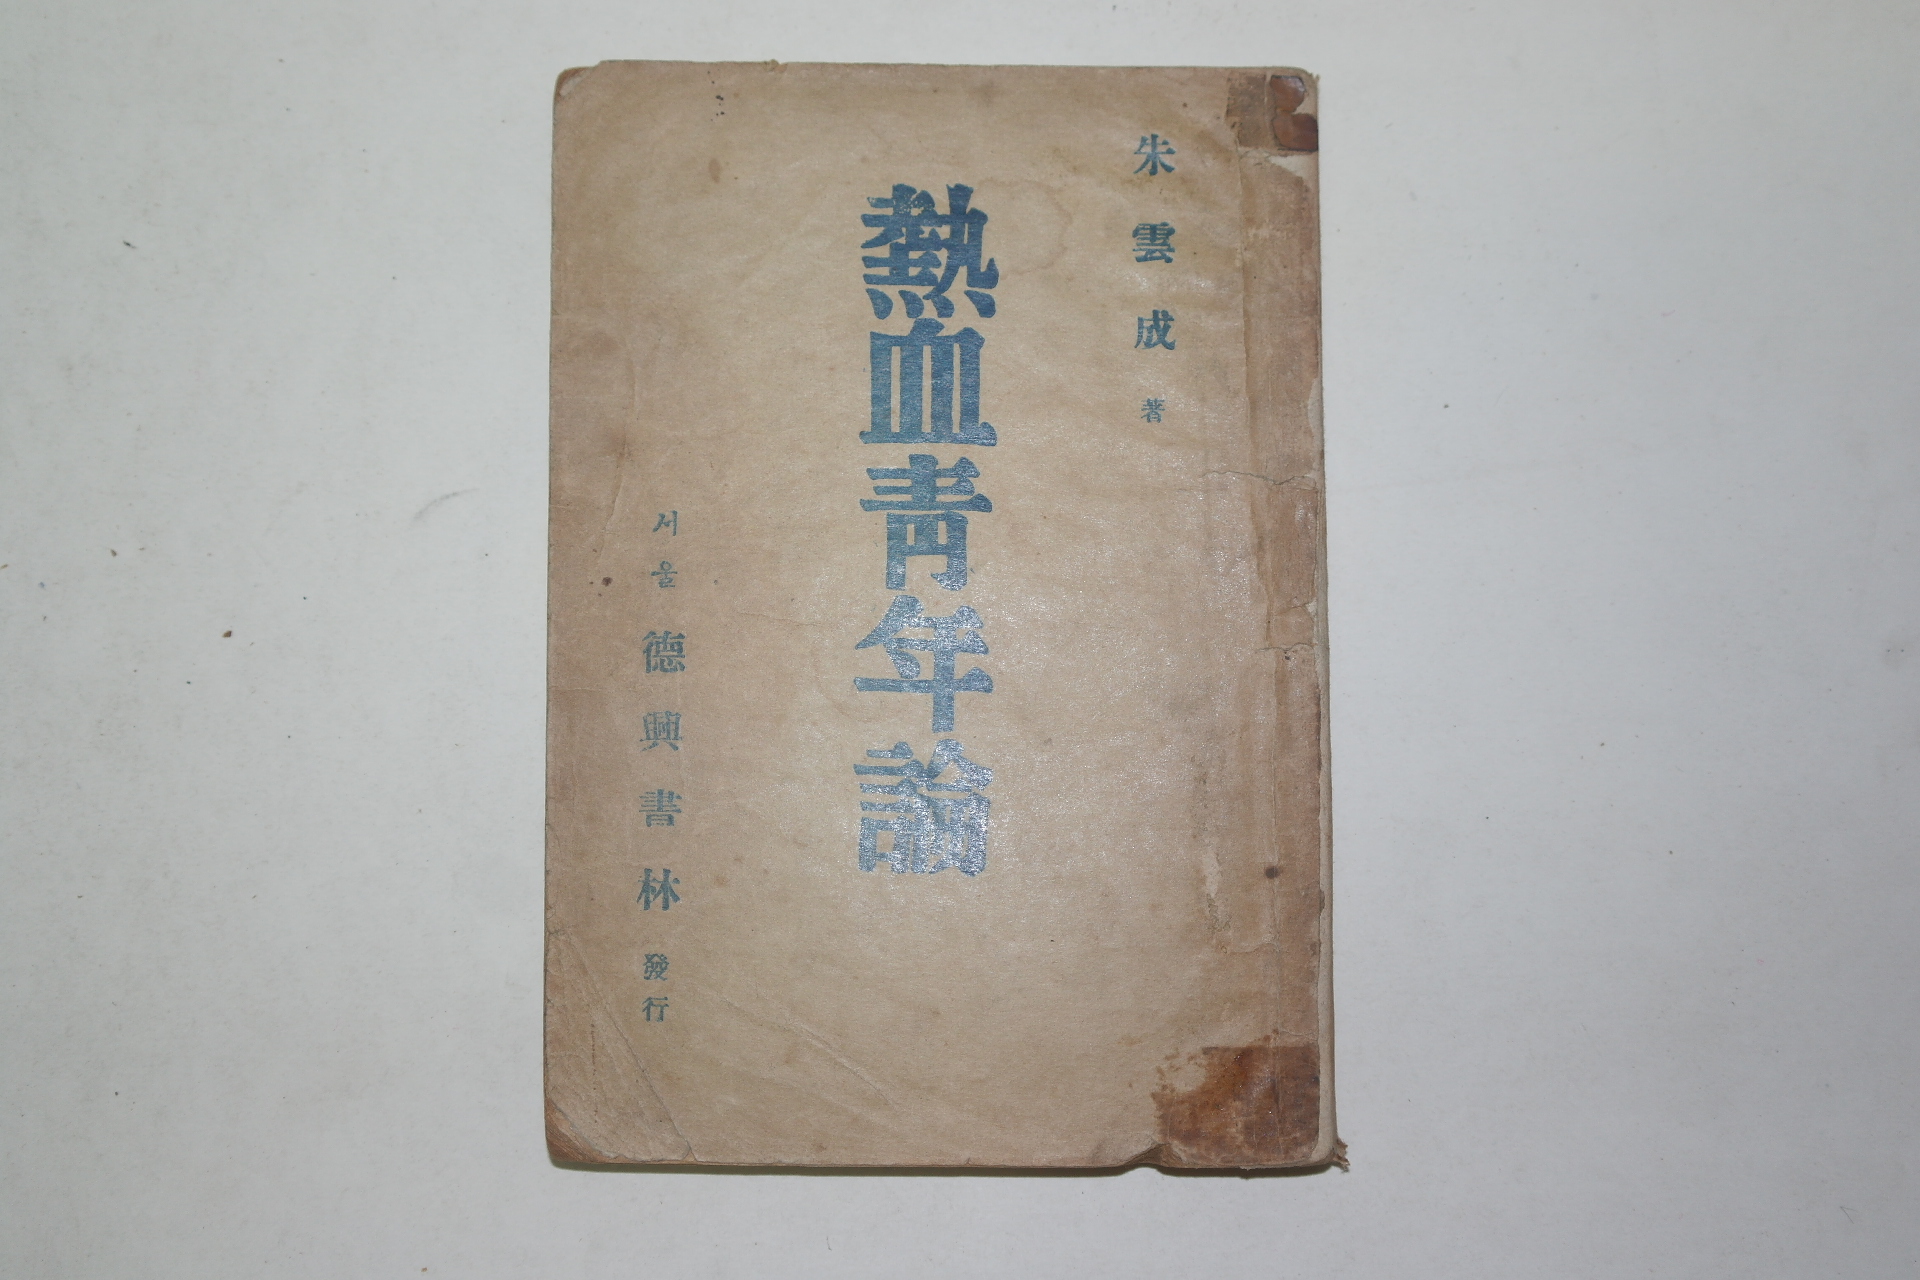 1948년 주운성(朱雲成) 열혈청년론(熱血靑年論)